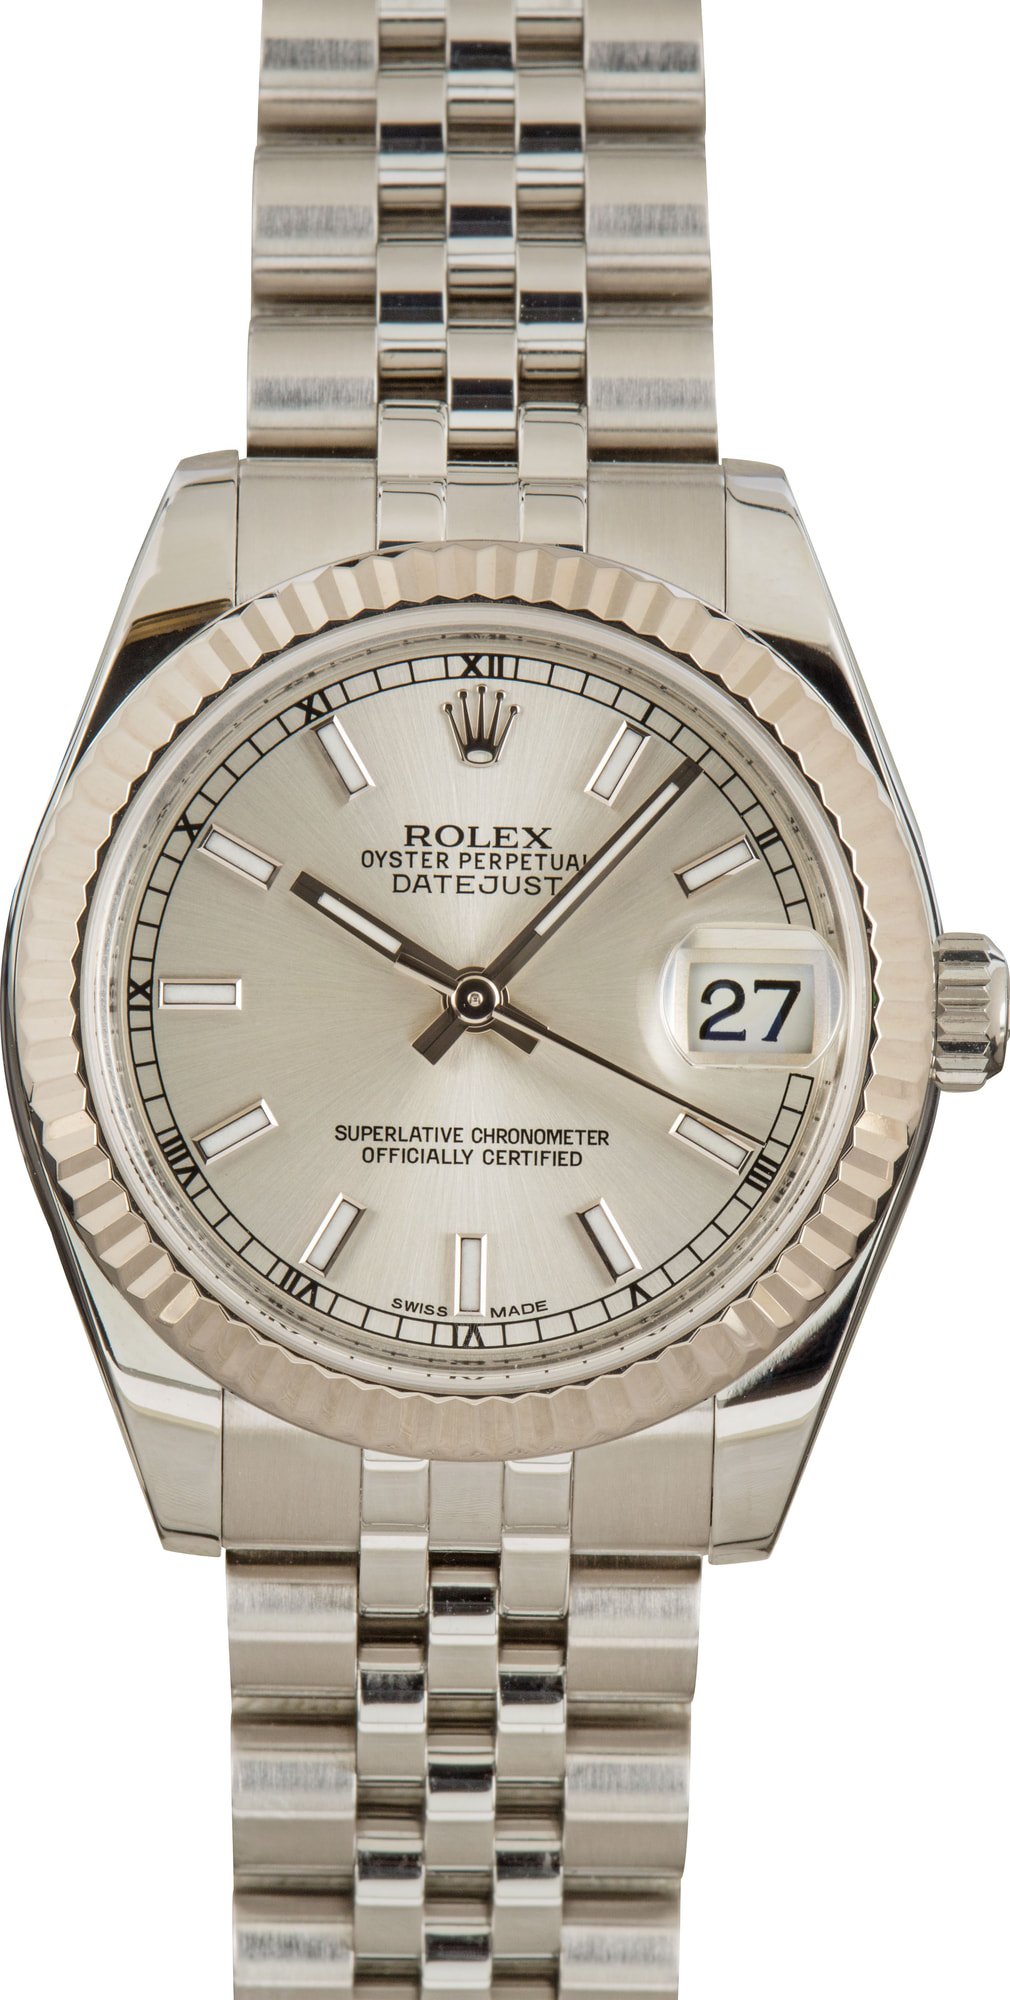 Rolex Watches Under $10,000 - BobsWatches.com